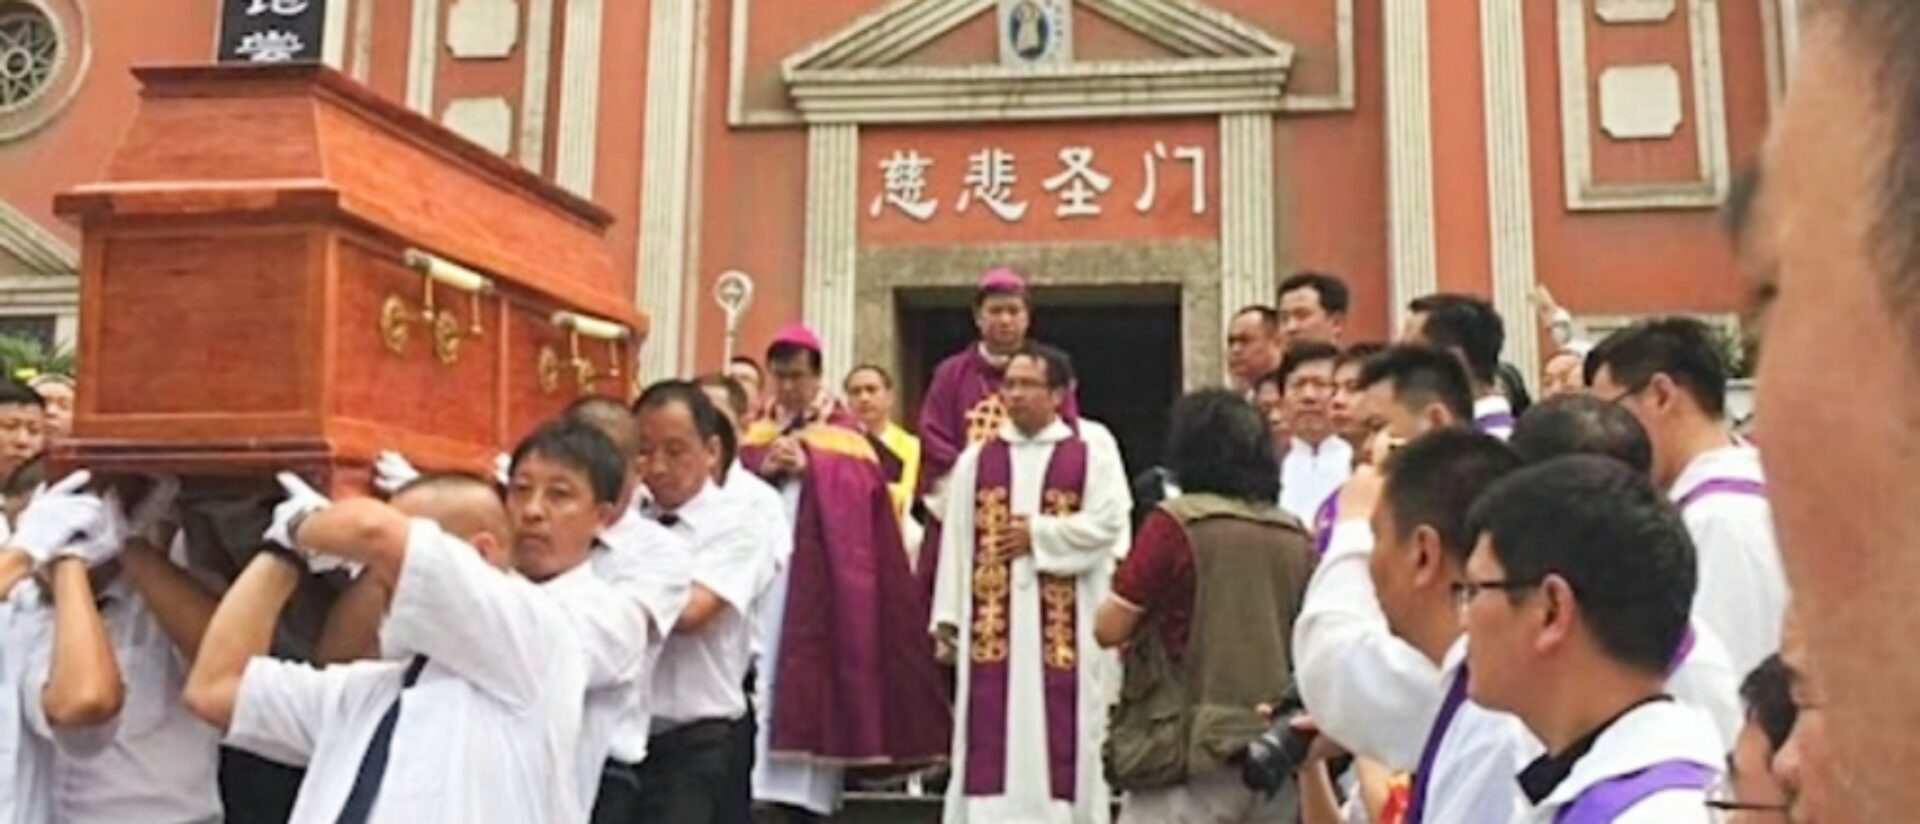 Funérailles catholiques en Chine | © Eglises d'Asie 